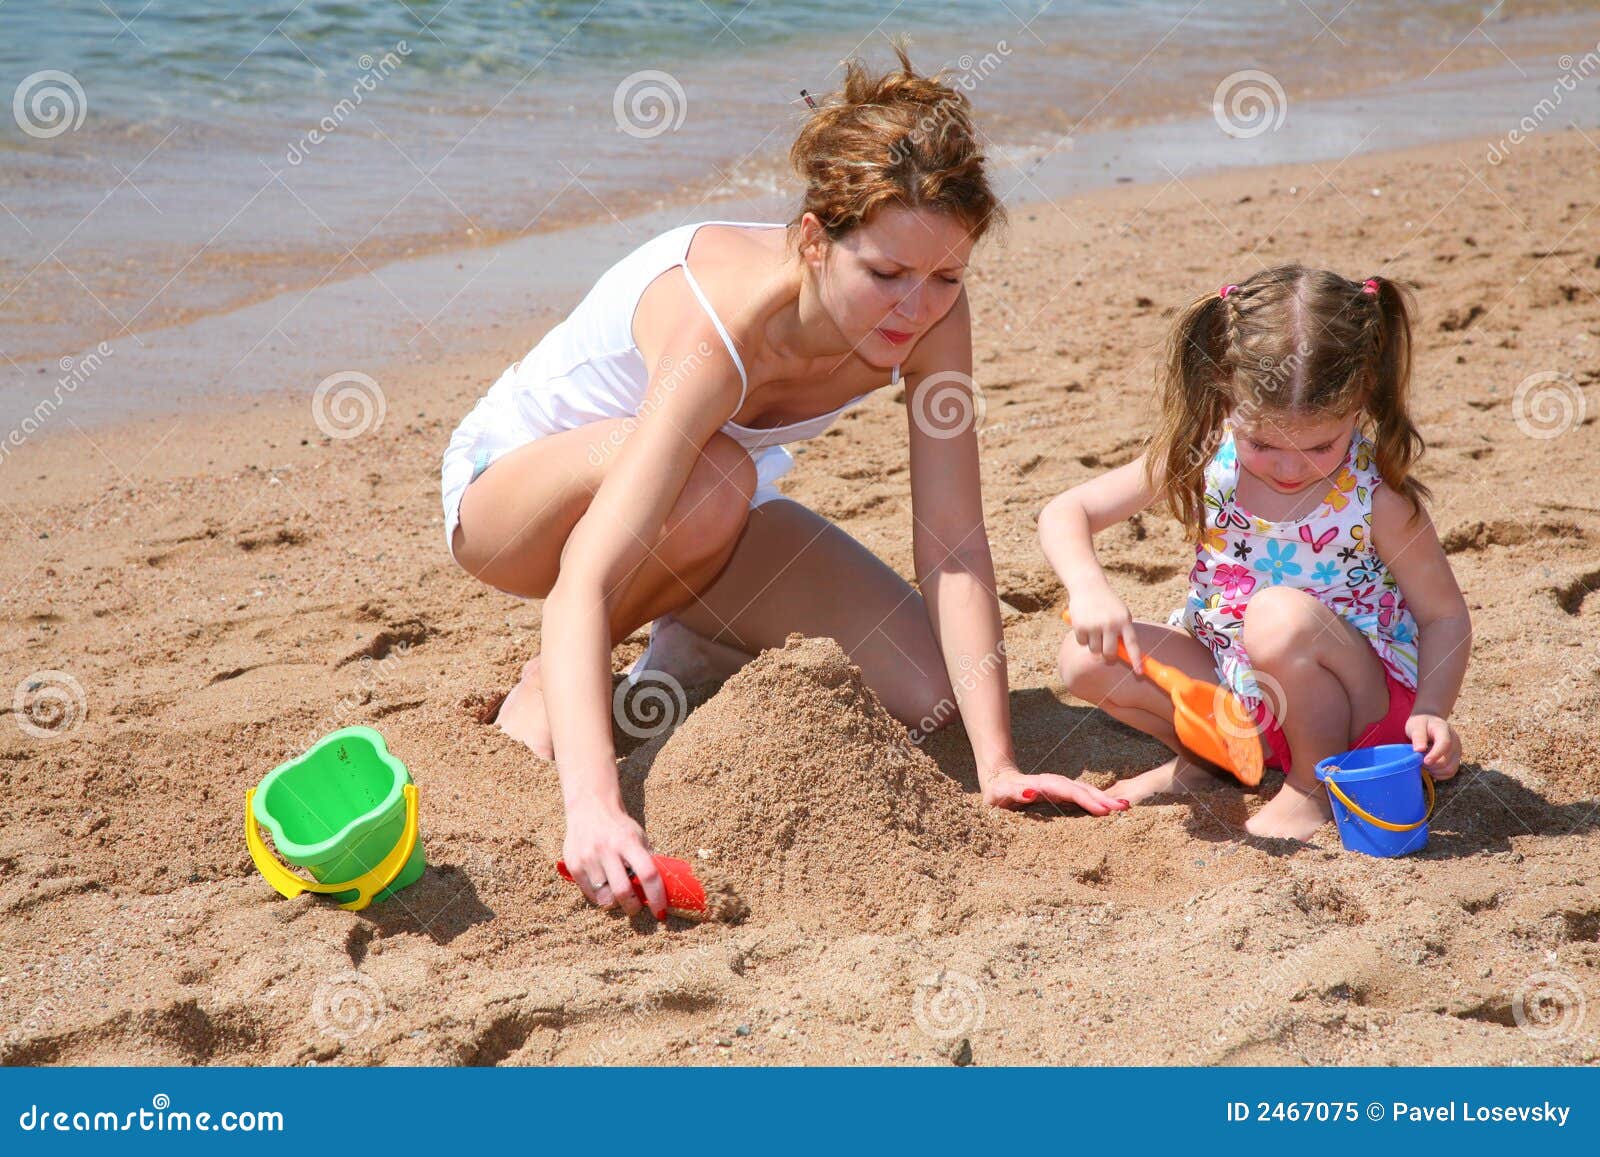 нудистский пляж с голыми детьми фото 6